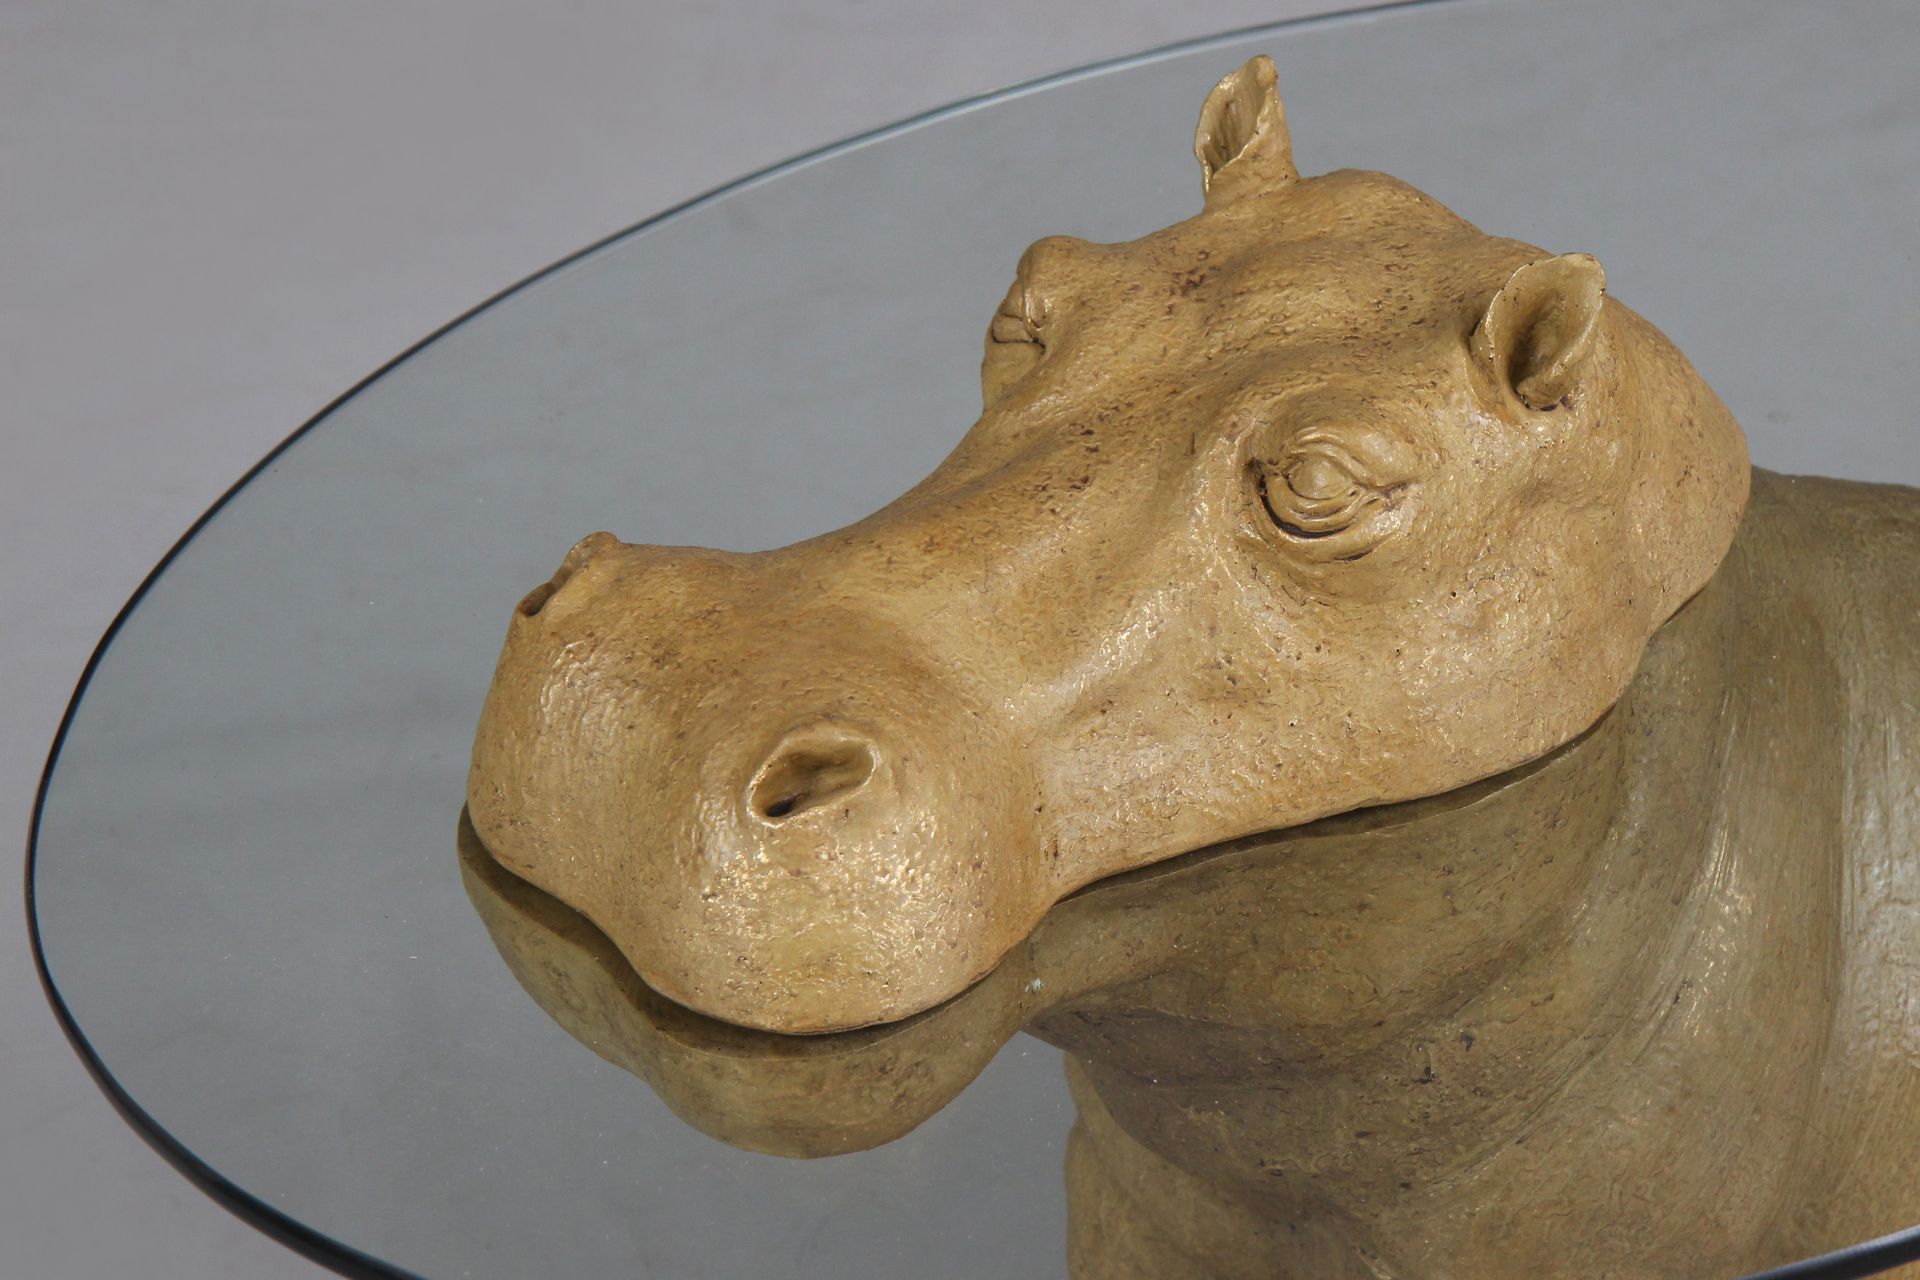 Beistelltisch mit Figur eines Nilpferds (Hippopotamus) - Image 3 of 3